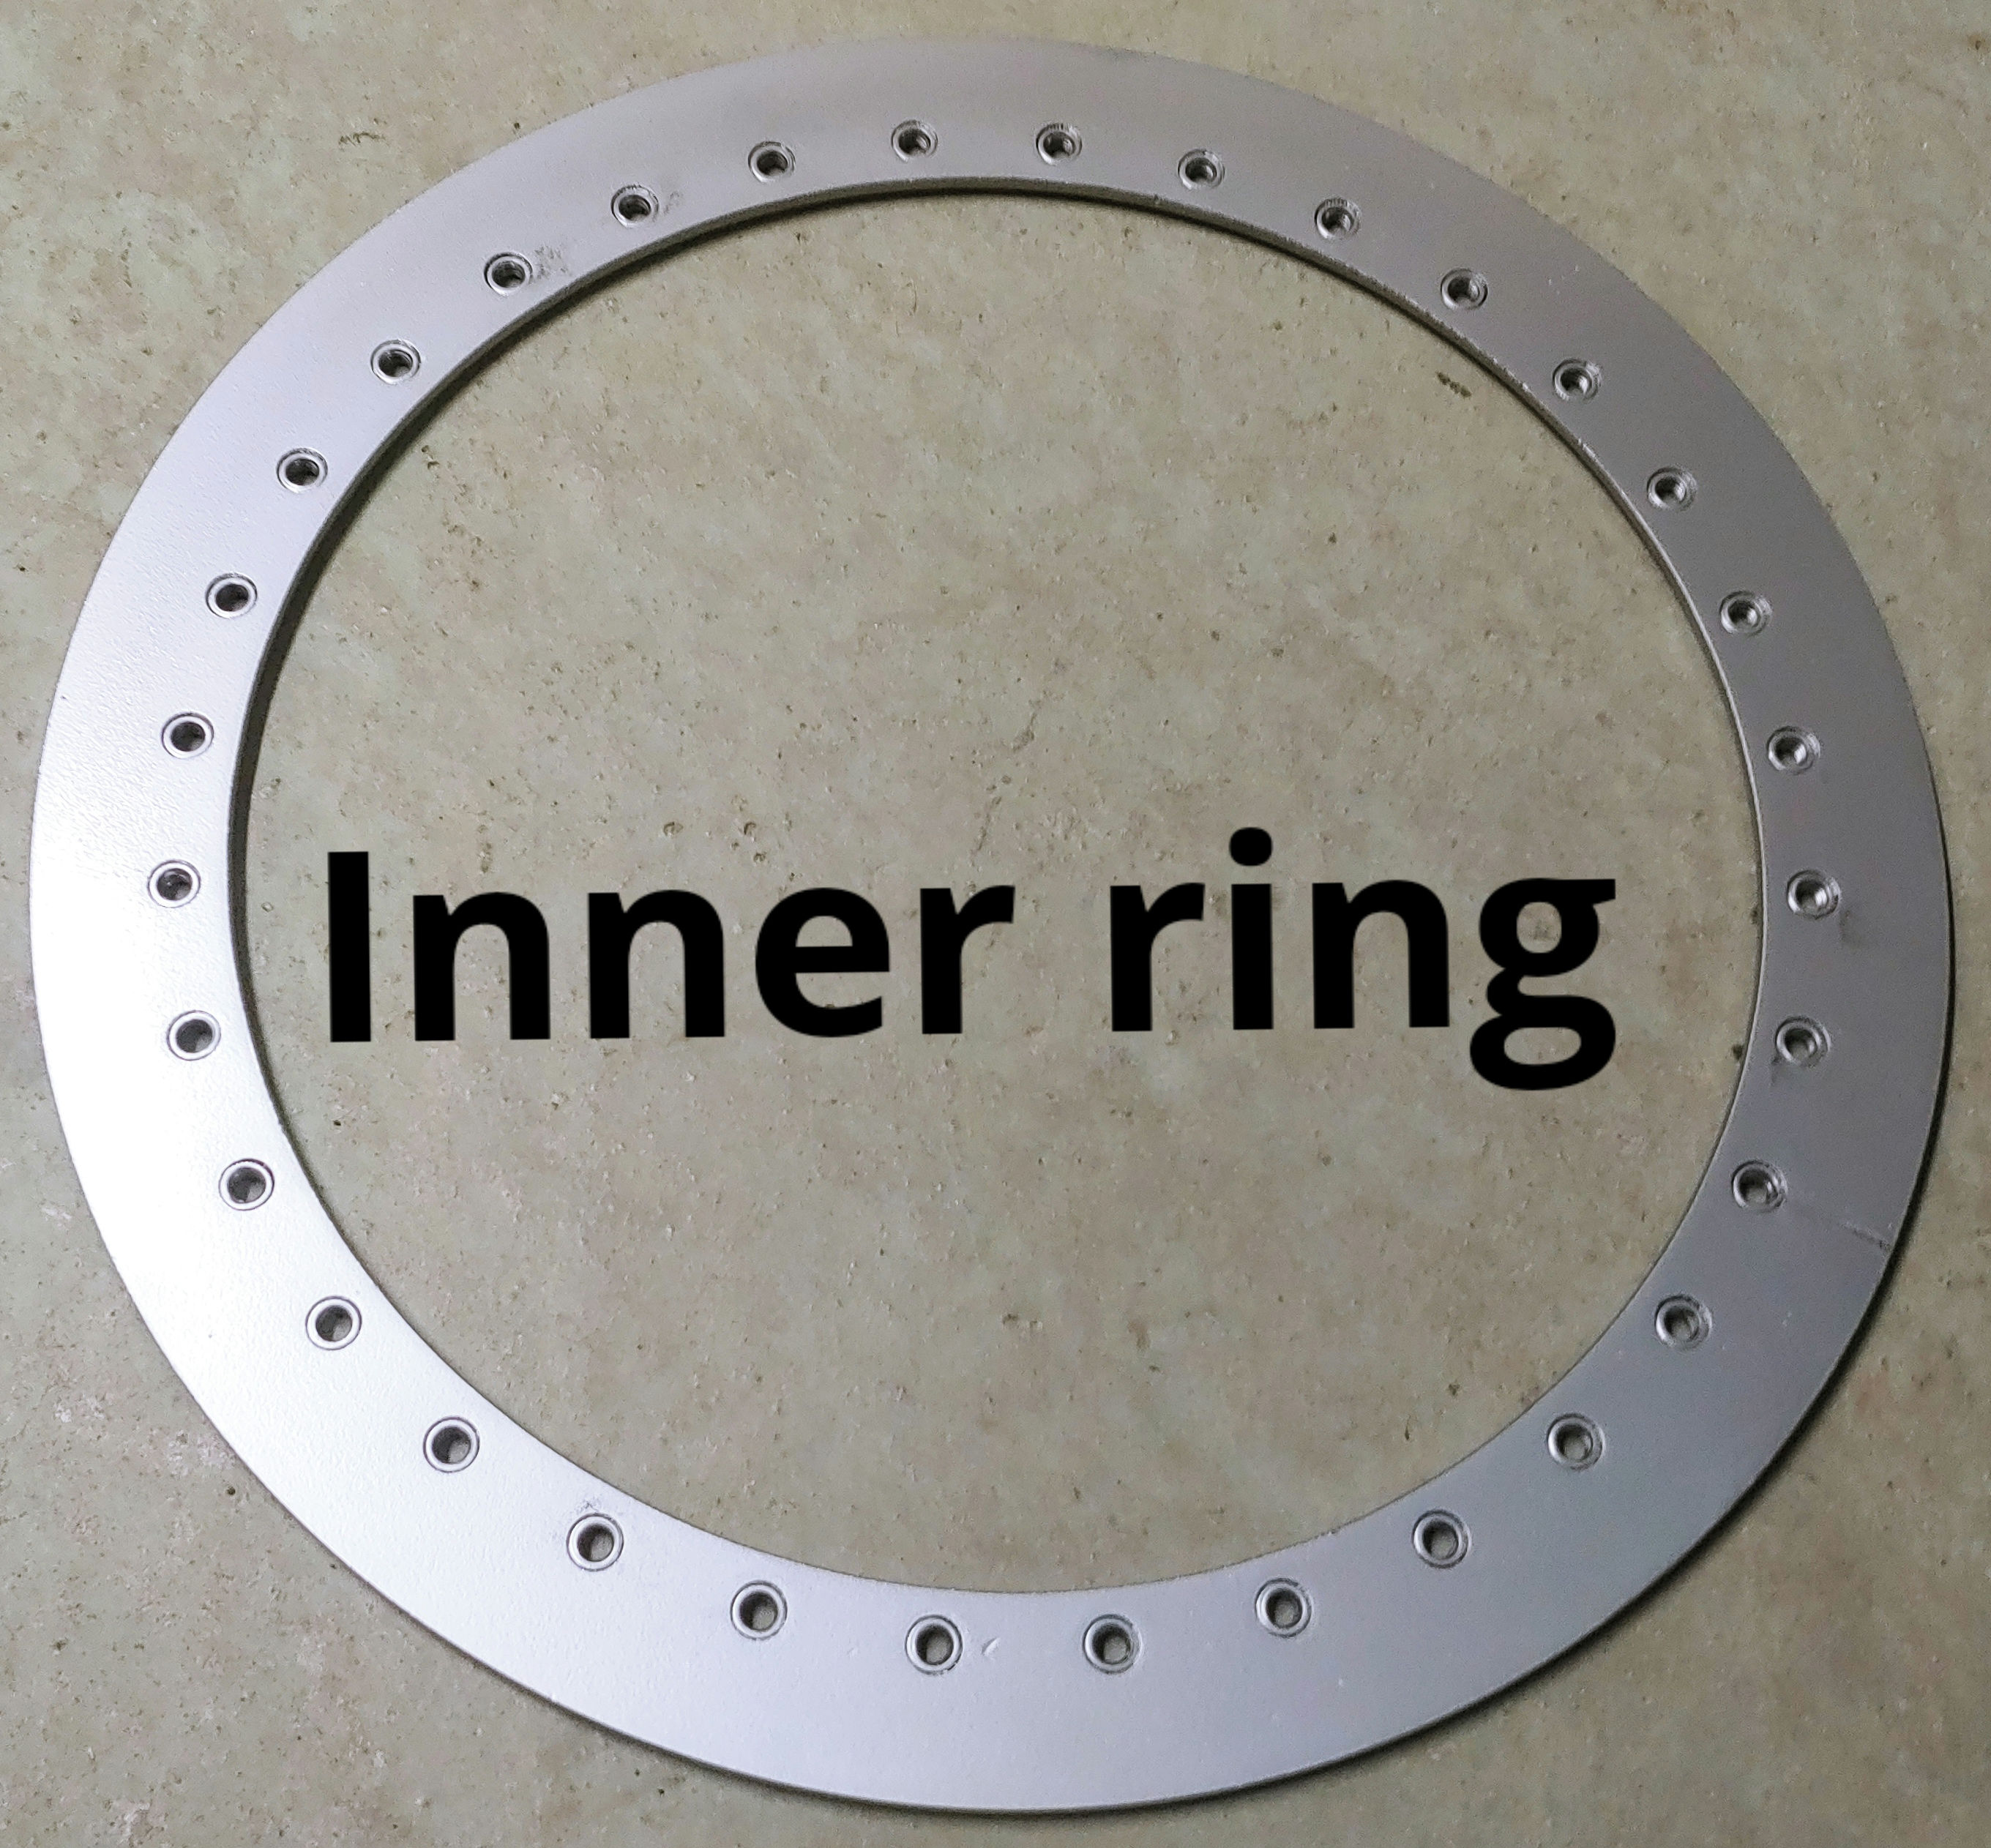 Inner ring.jpg